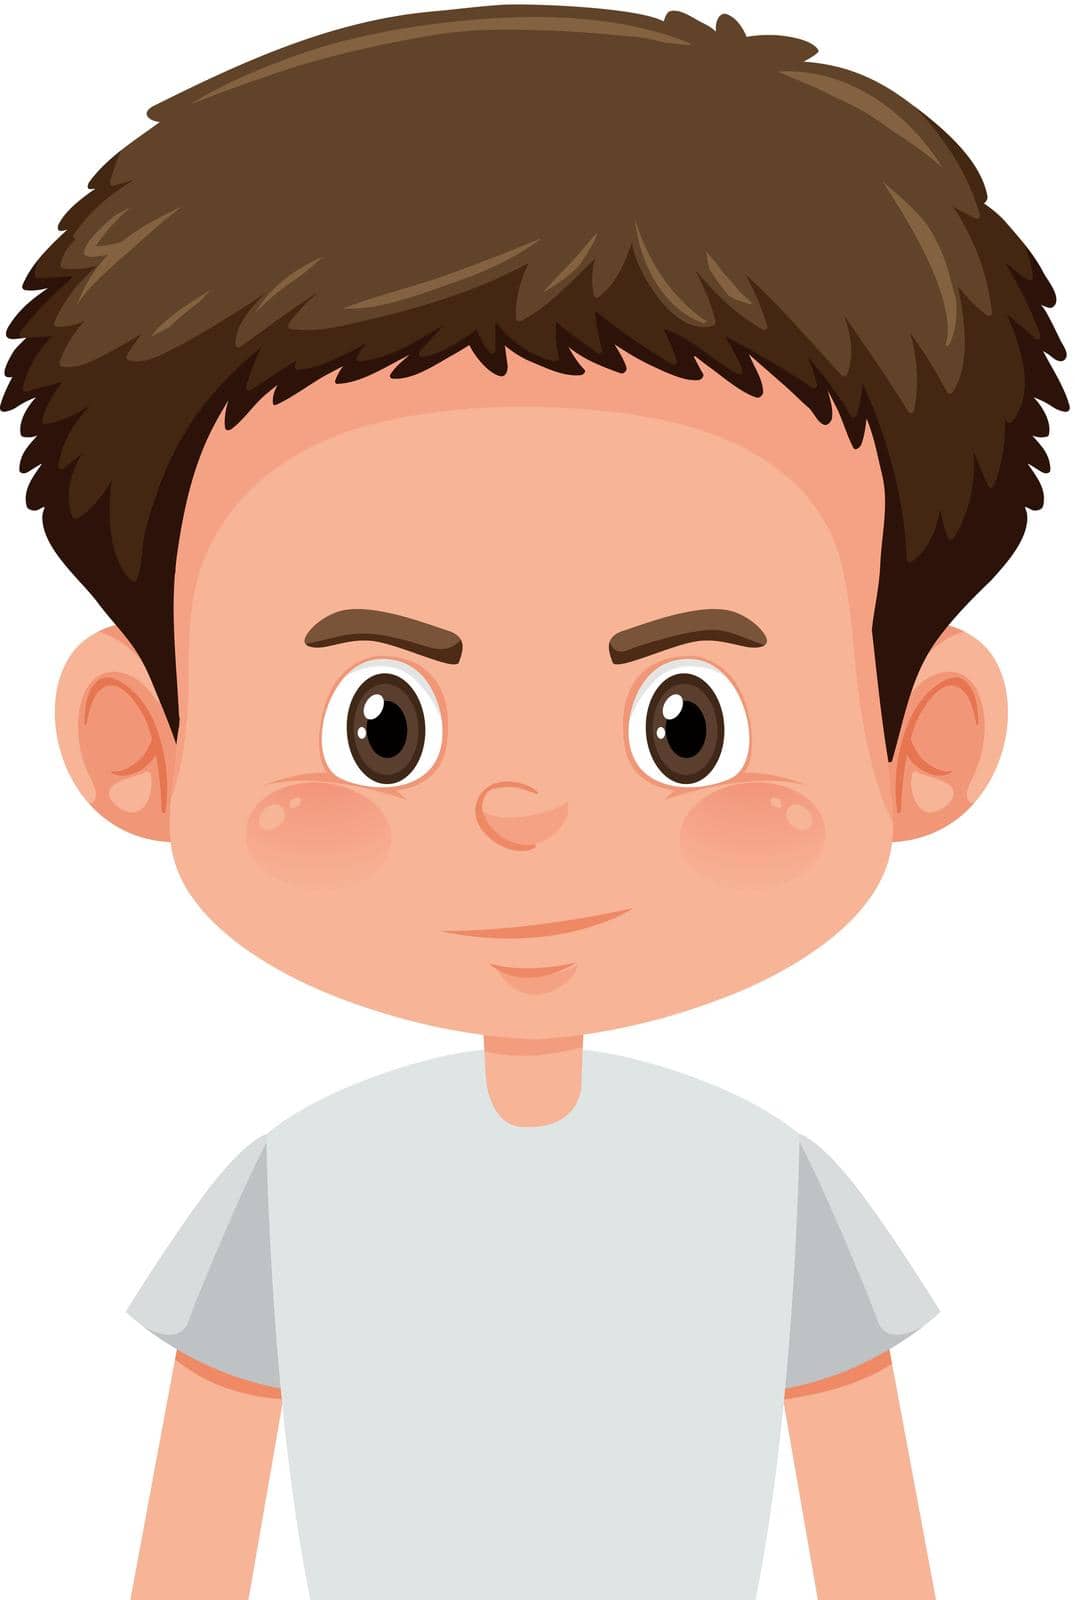 A brunette boy character illustration